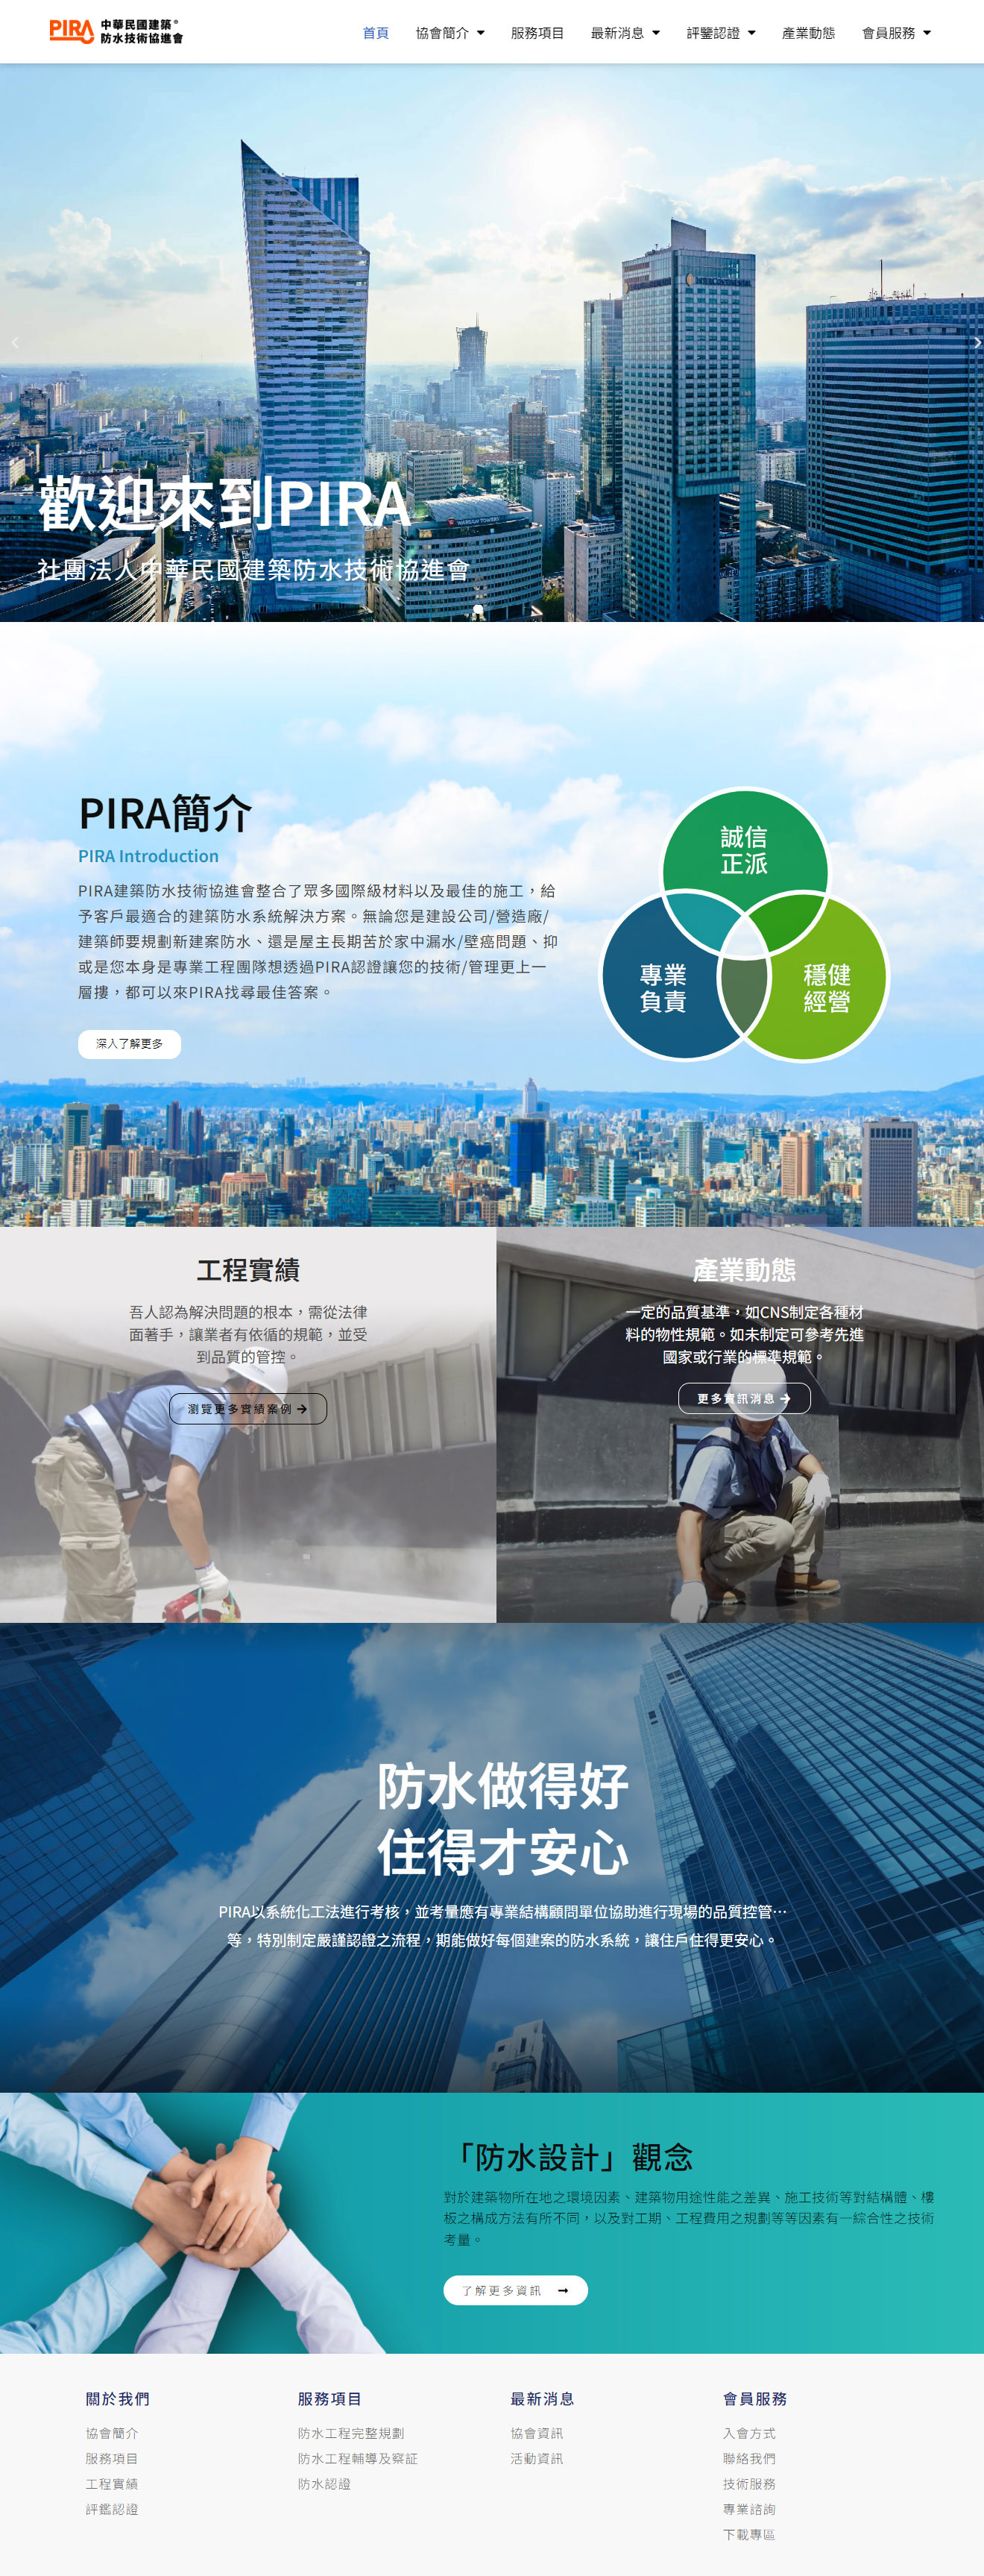 大信防水協進會 1 中華民國建築防水防漏技術協進會